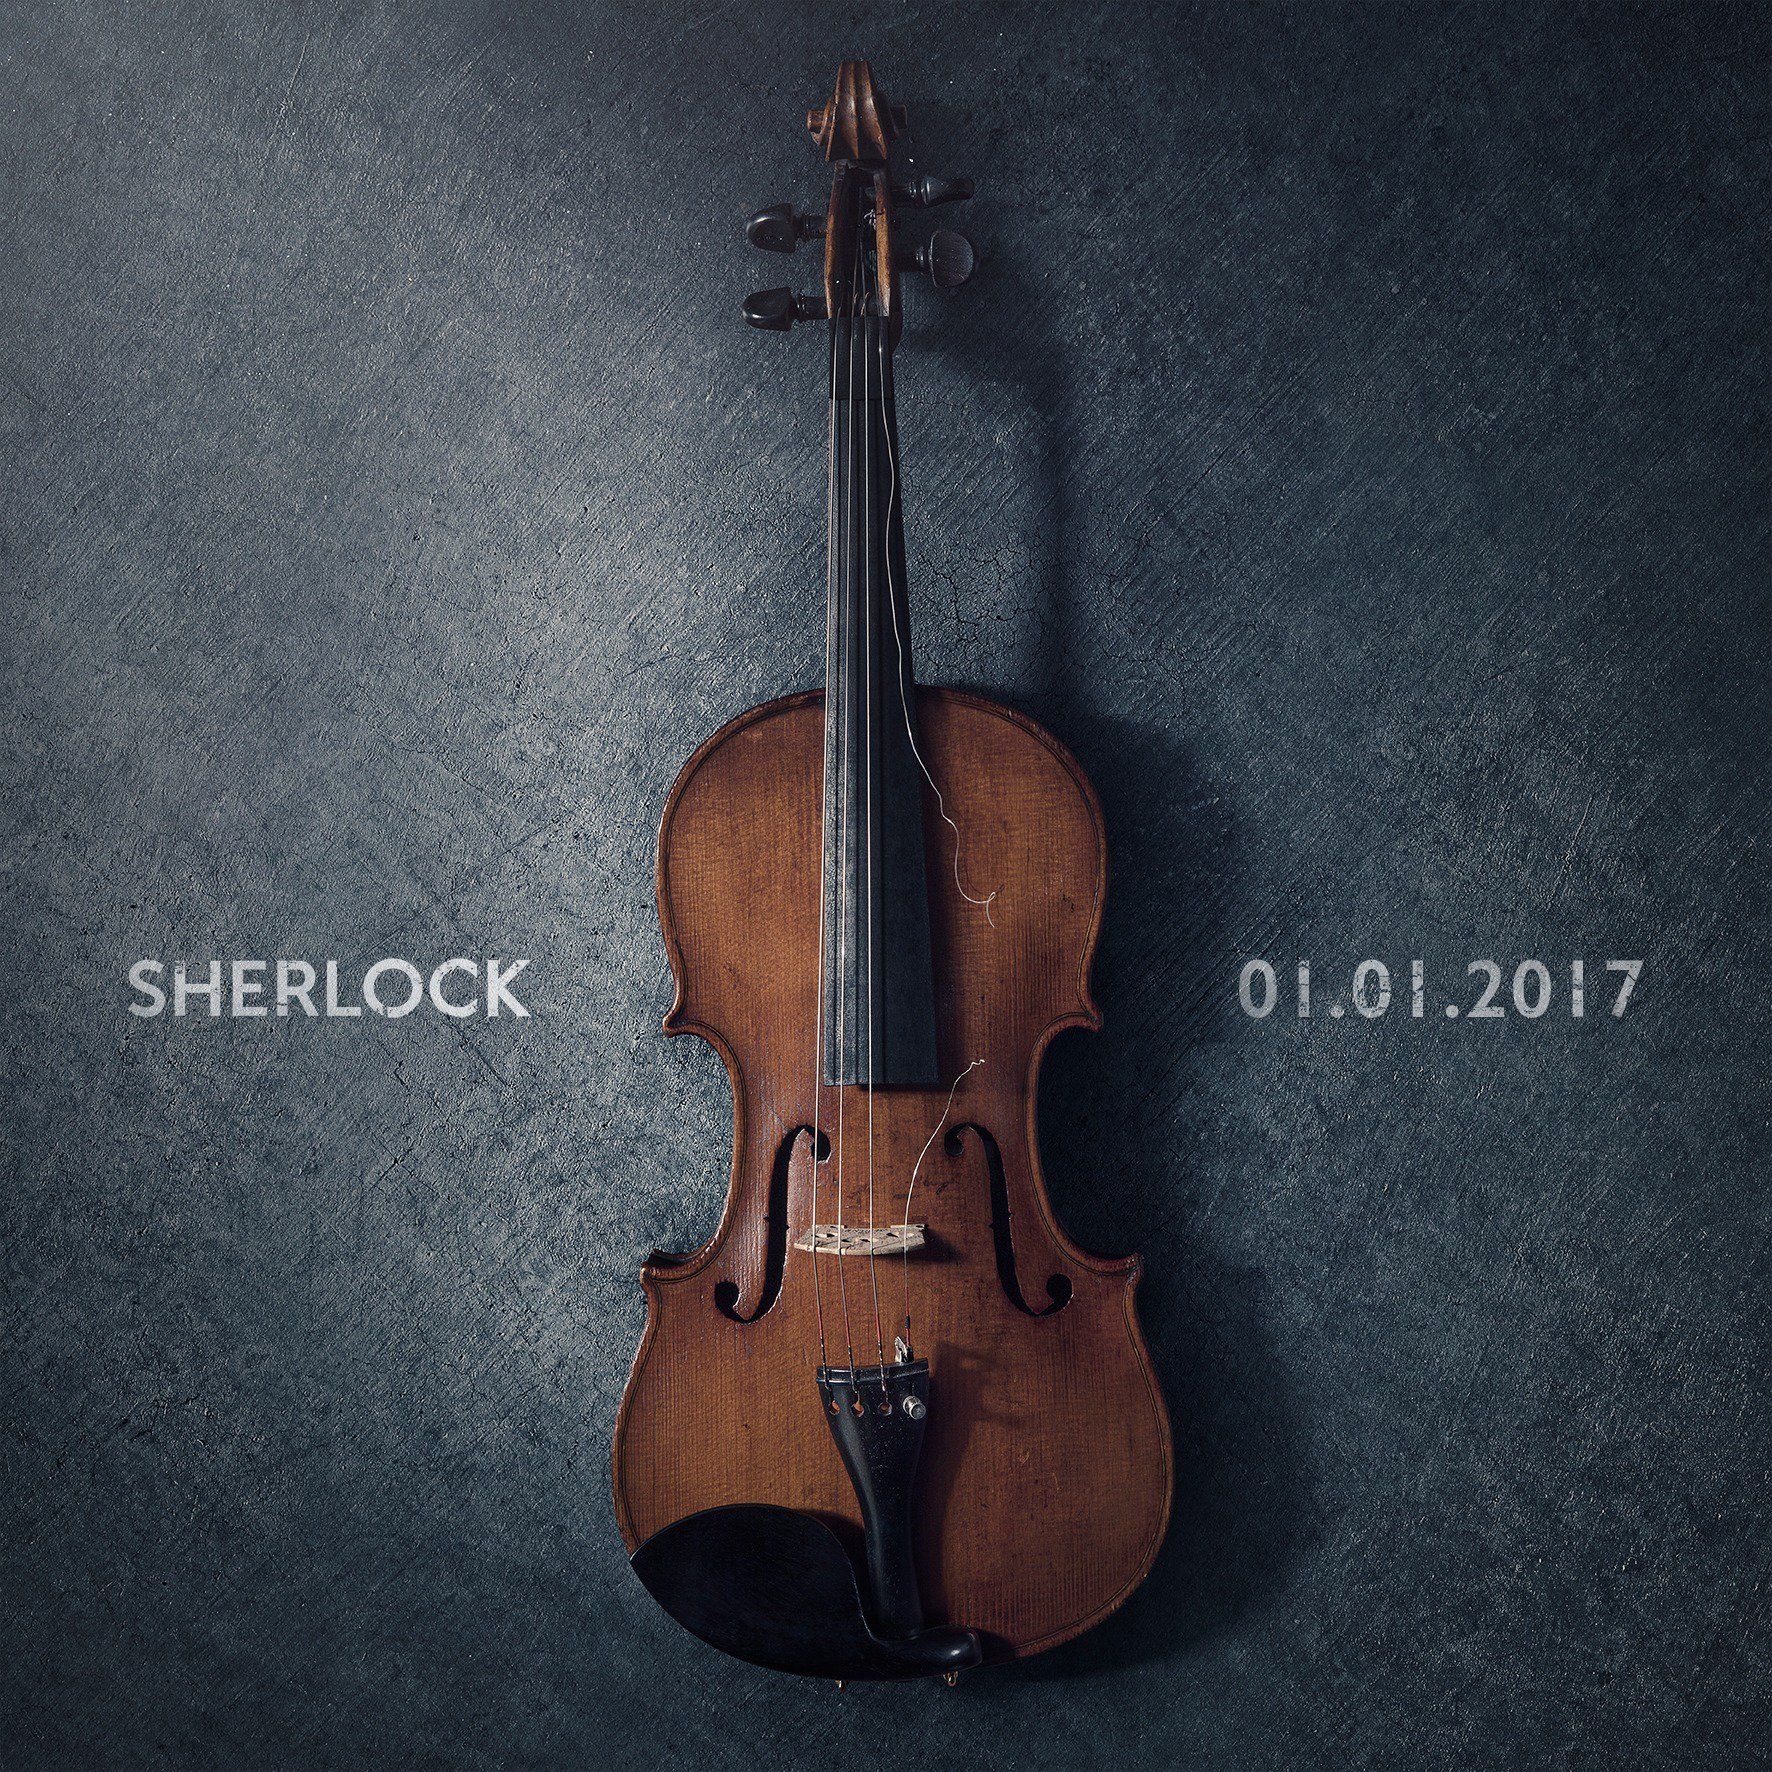 Sherlock Season 4 Teaser Poster